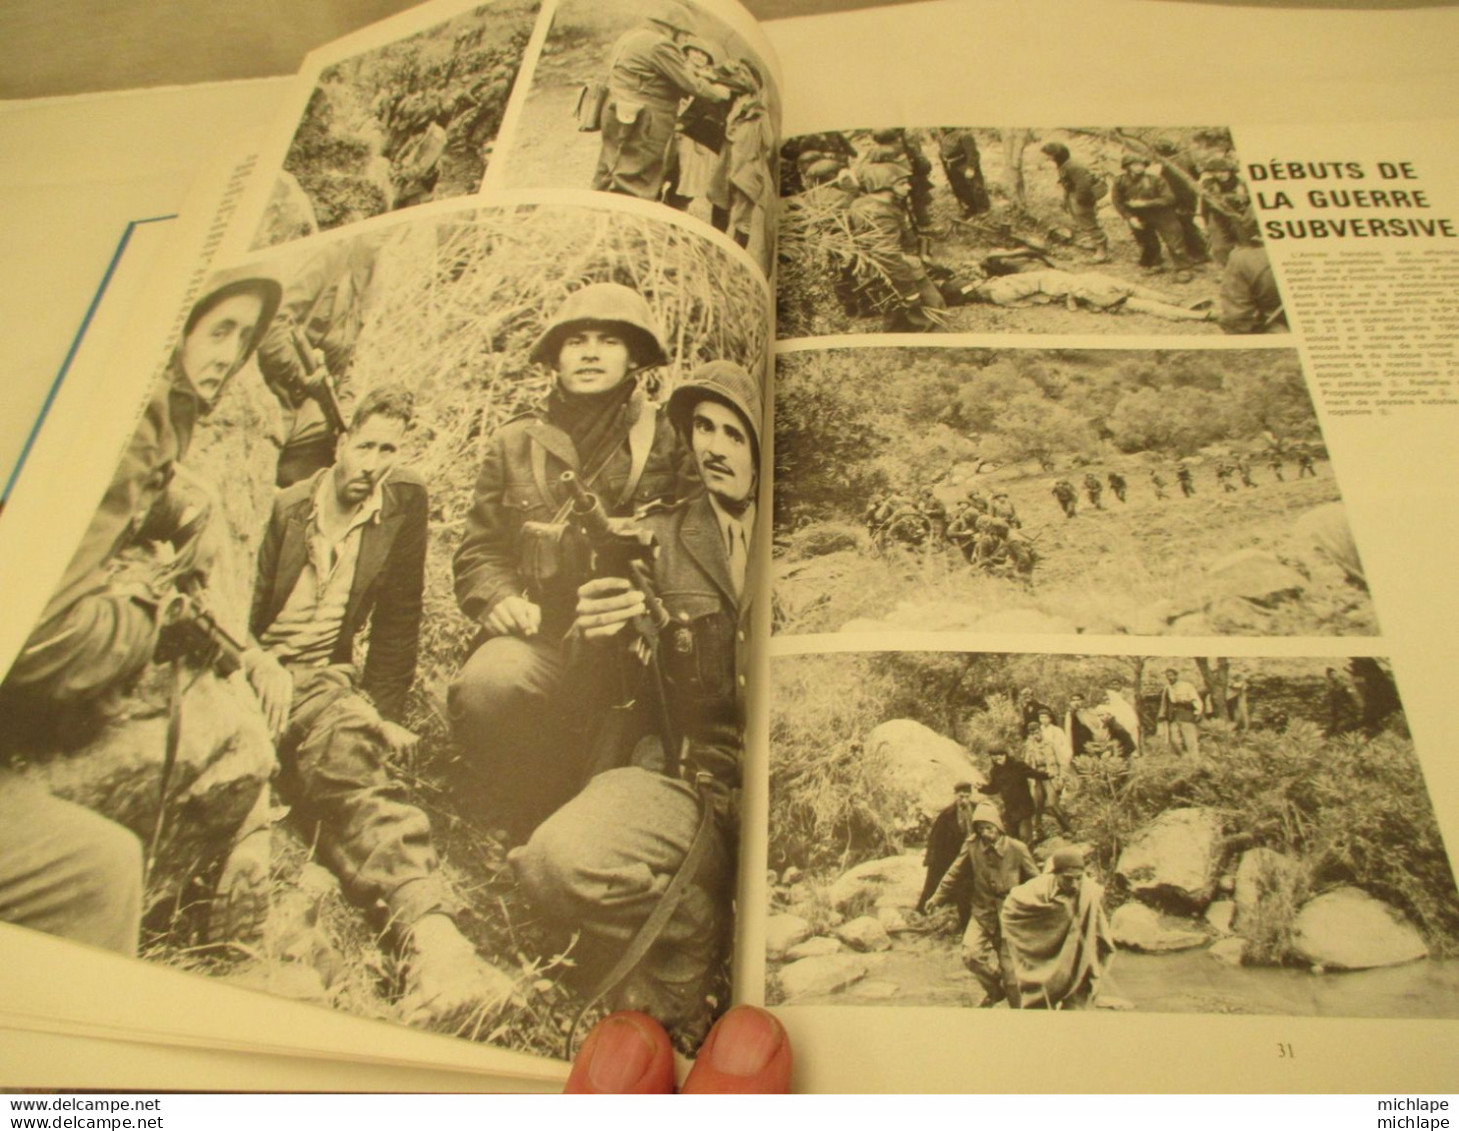 Livre Relié - Soldats Du Djebel -histoire De La Guerre D'algerie - 370 Pages - Format 25-31 - 1979  édit S.P. L - Armas De Colección